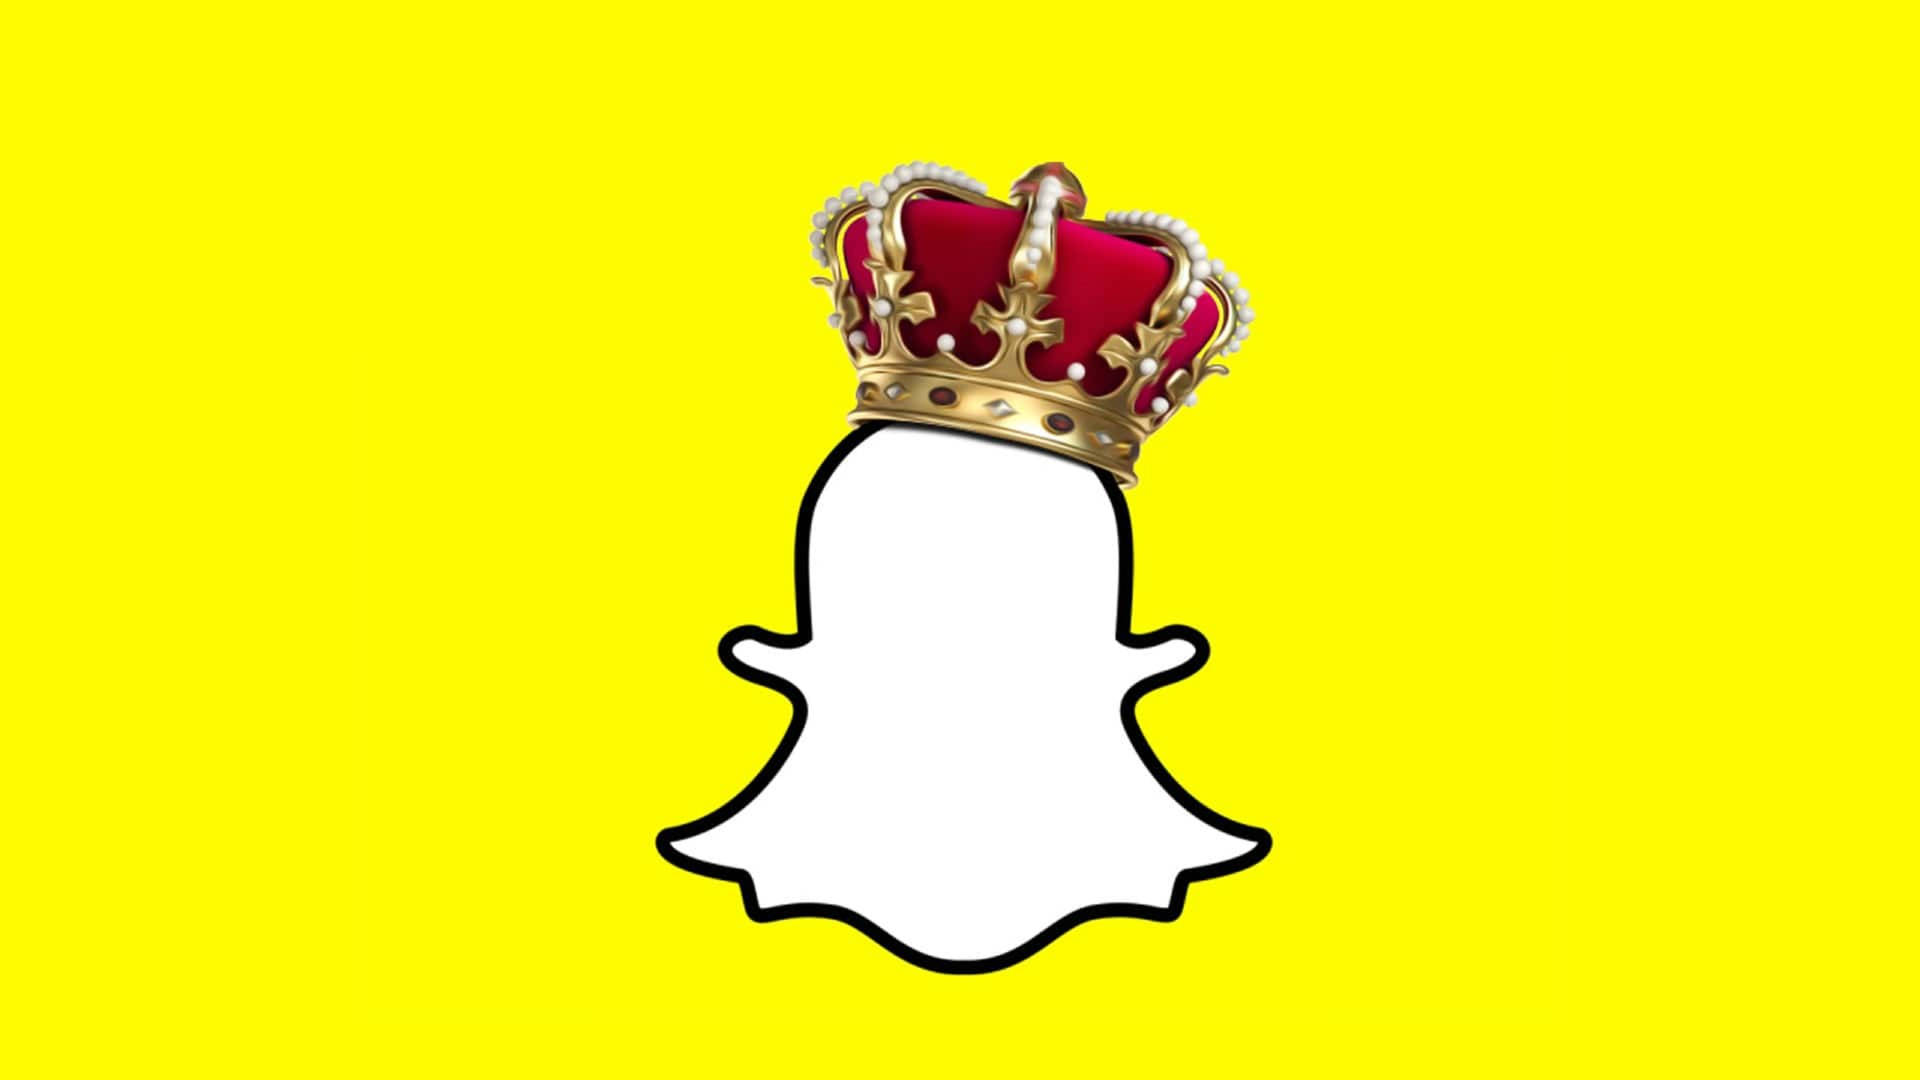 100+] Snapchat Backgrounds